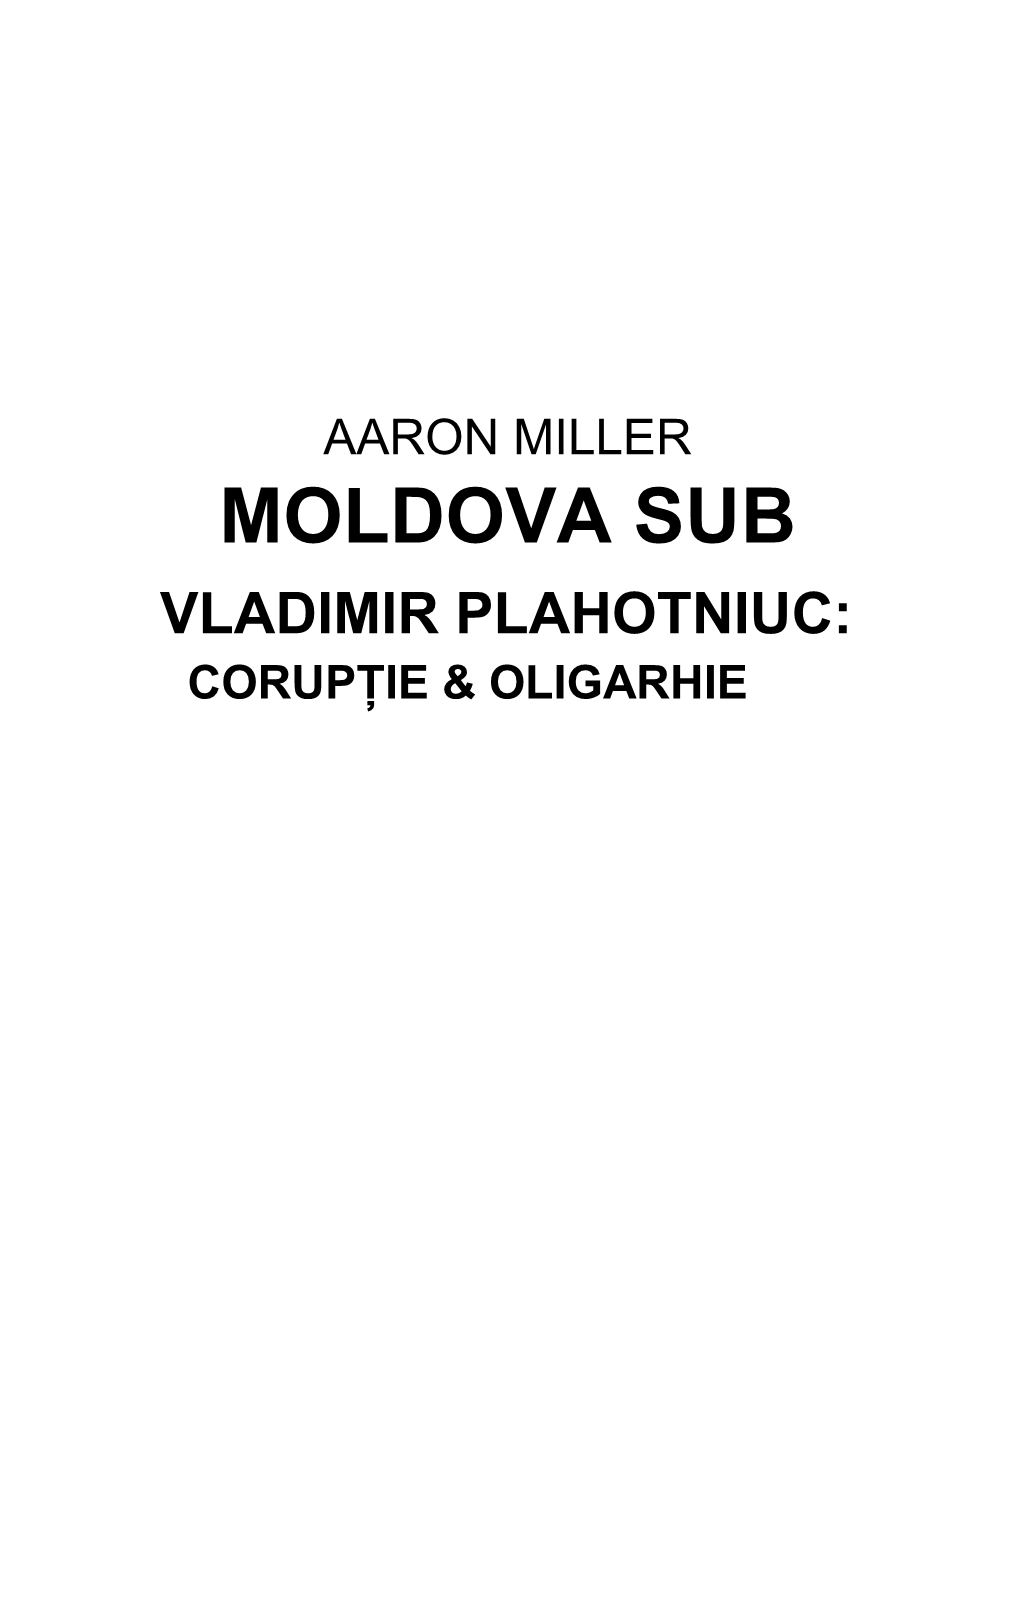 Aaron Miller Moldova Sub